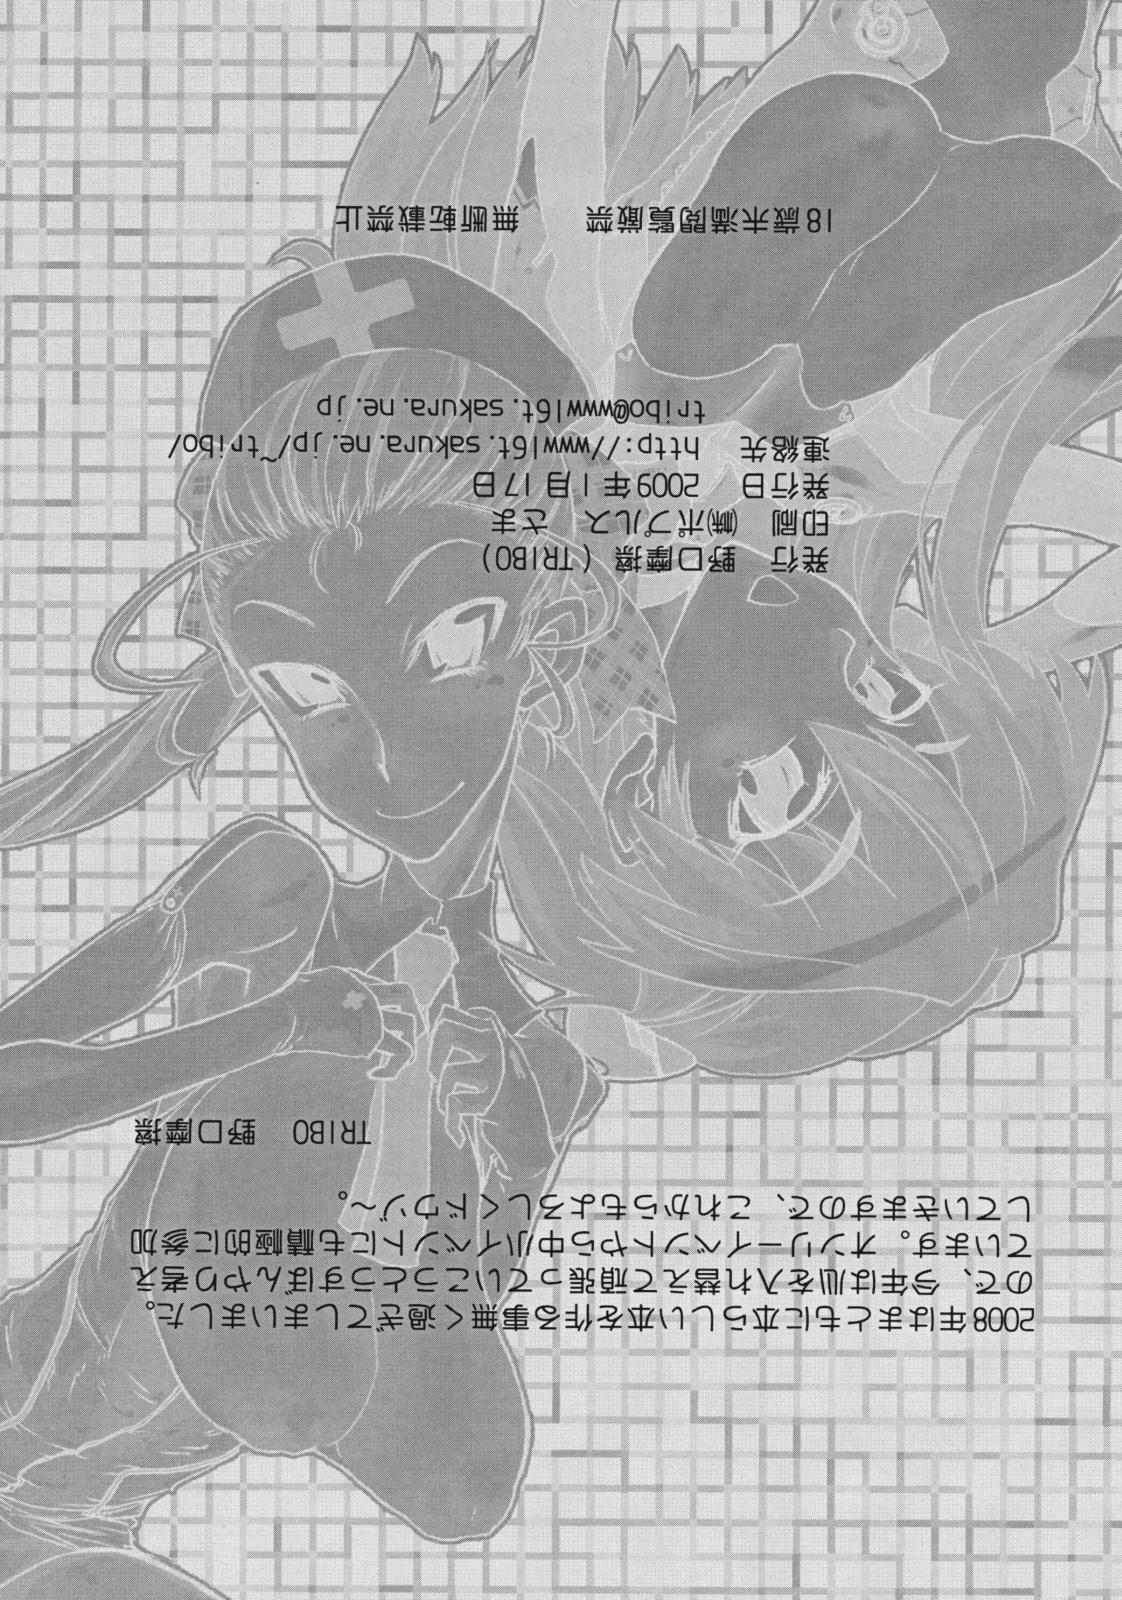 Bitch MSL/A/K - Neon genesis evangelion Code geass Takamare takamaru Verga - Page 58